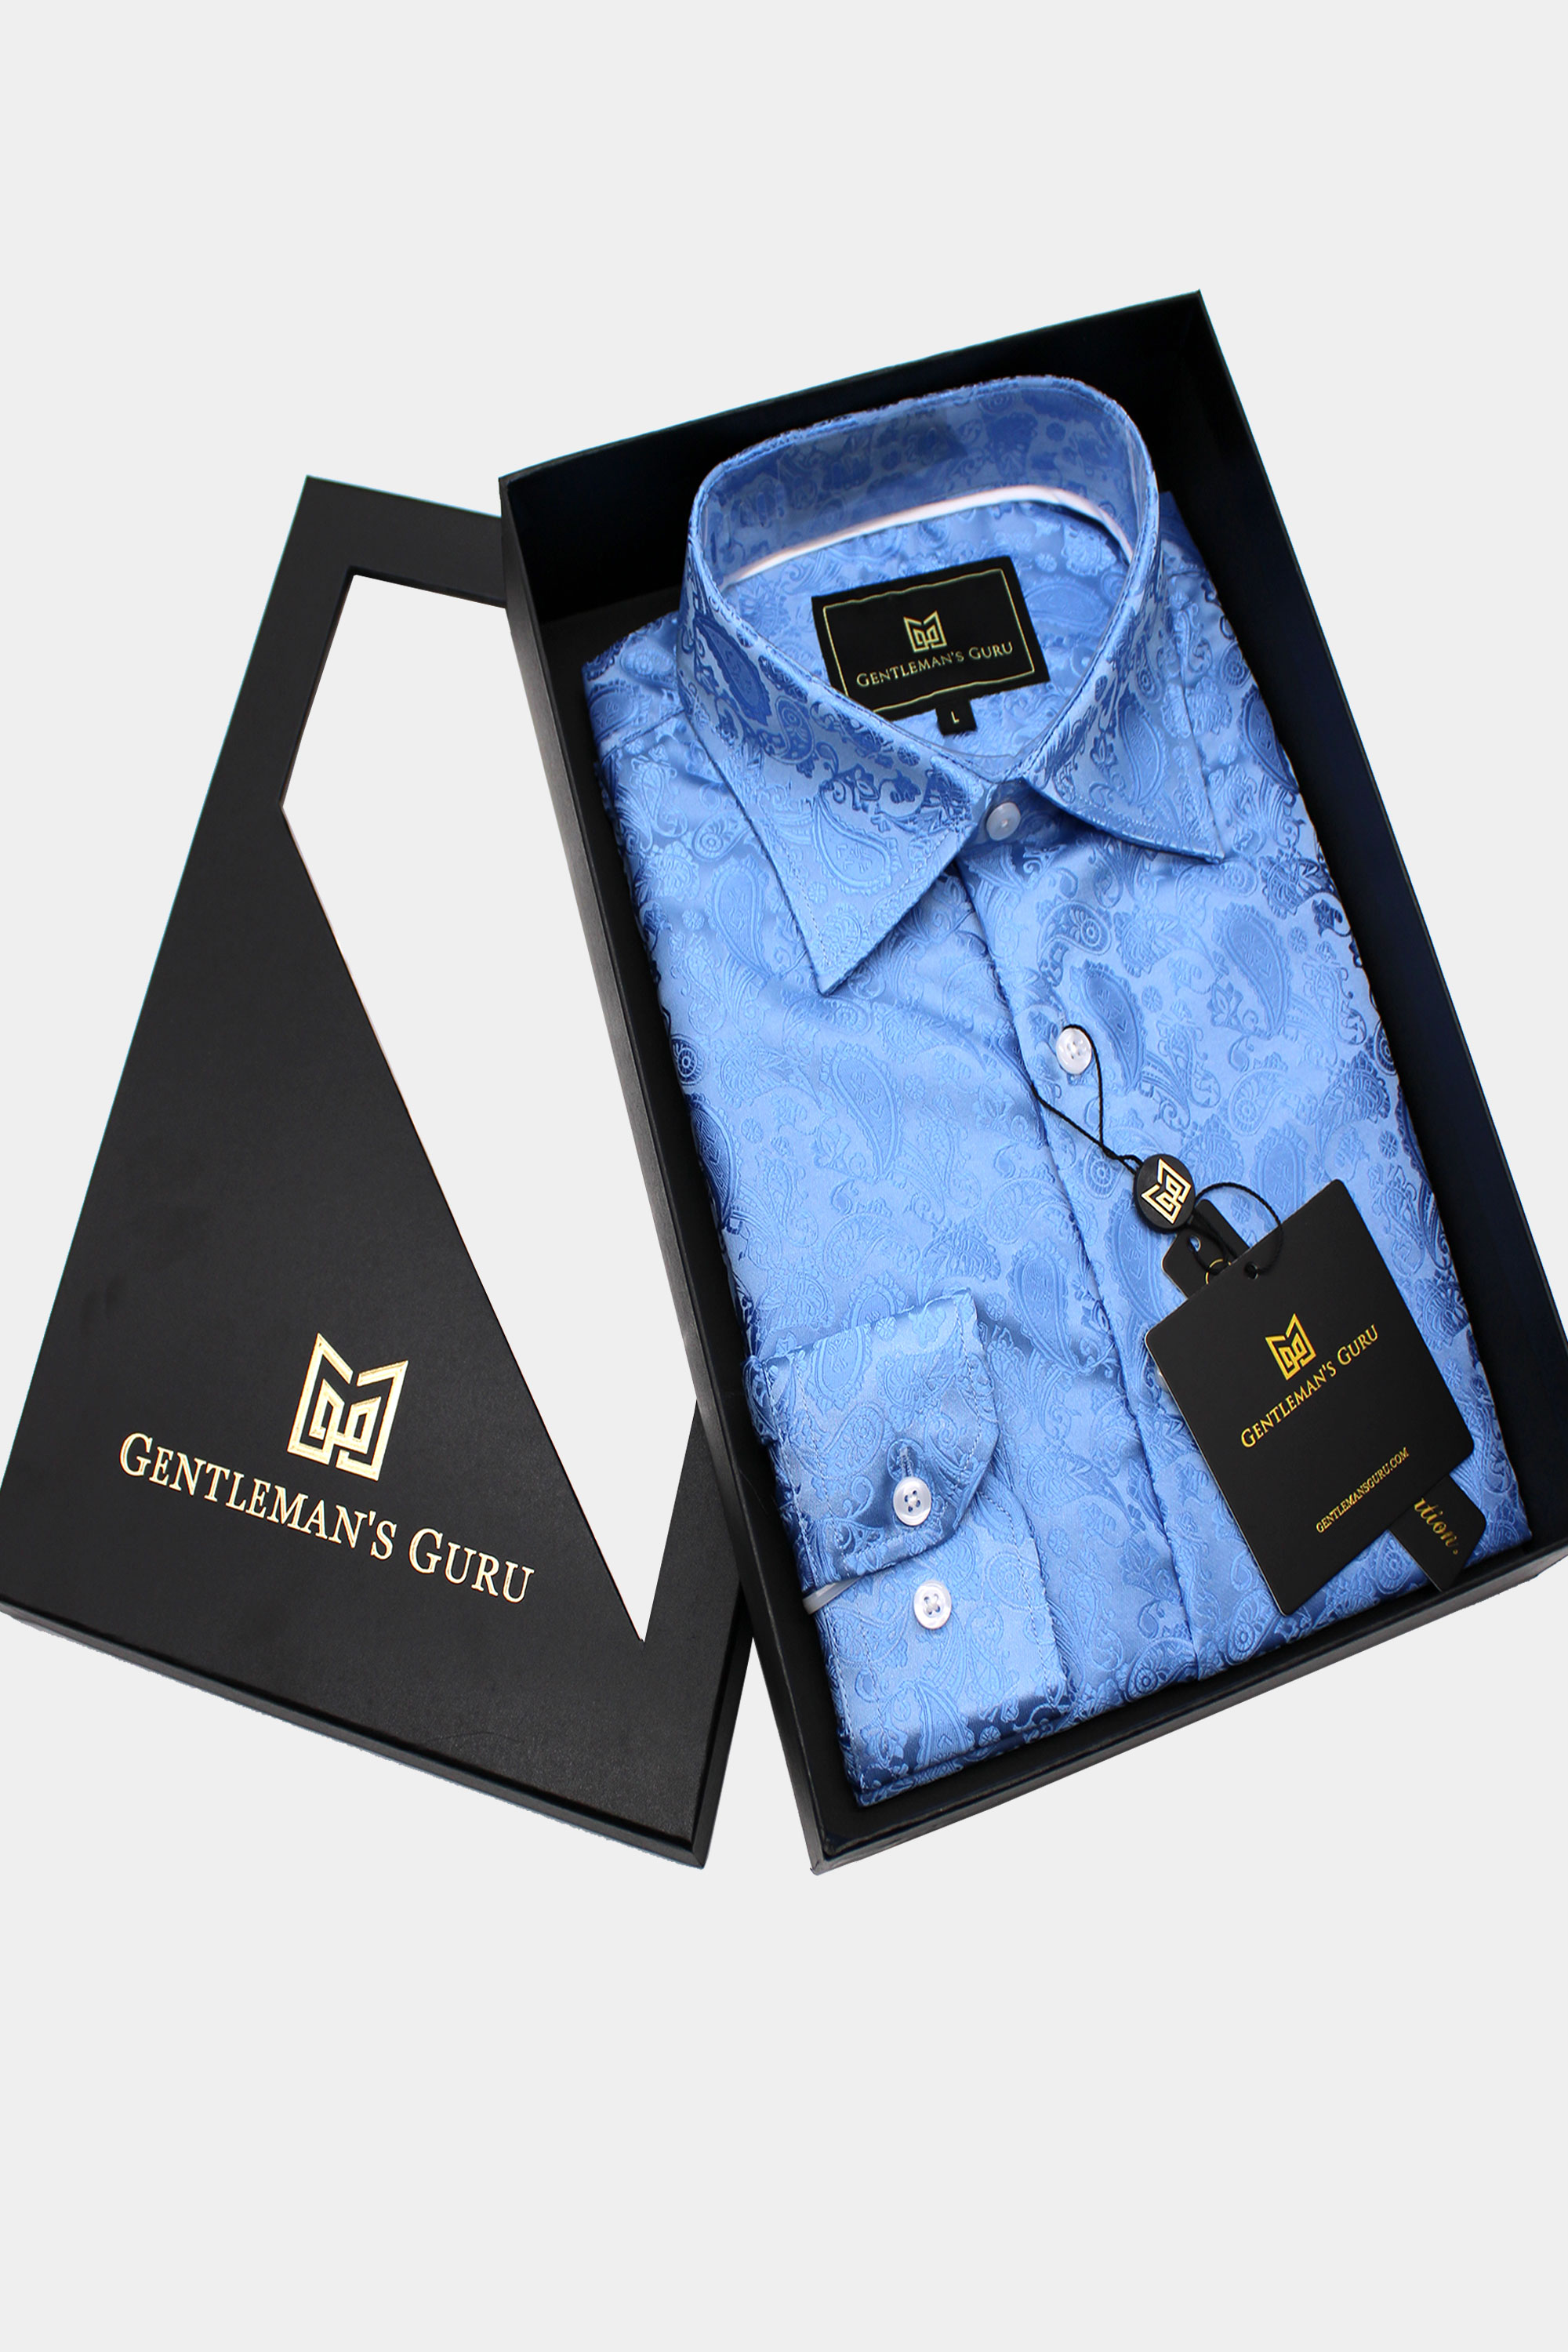 Men's Light Blue Dress Shirt | Gentleman's Guru